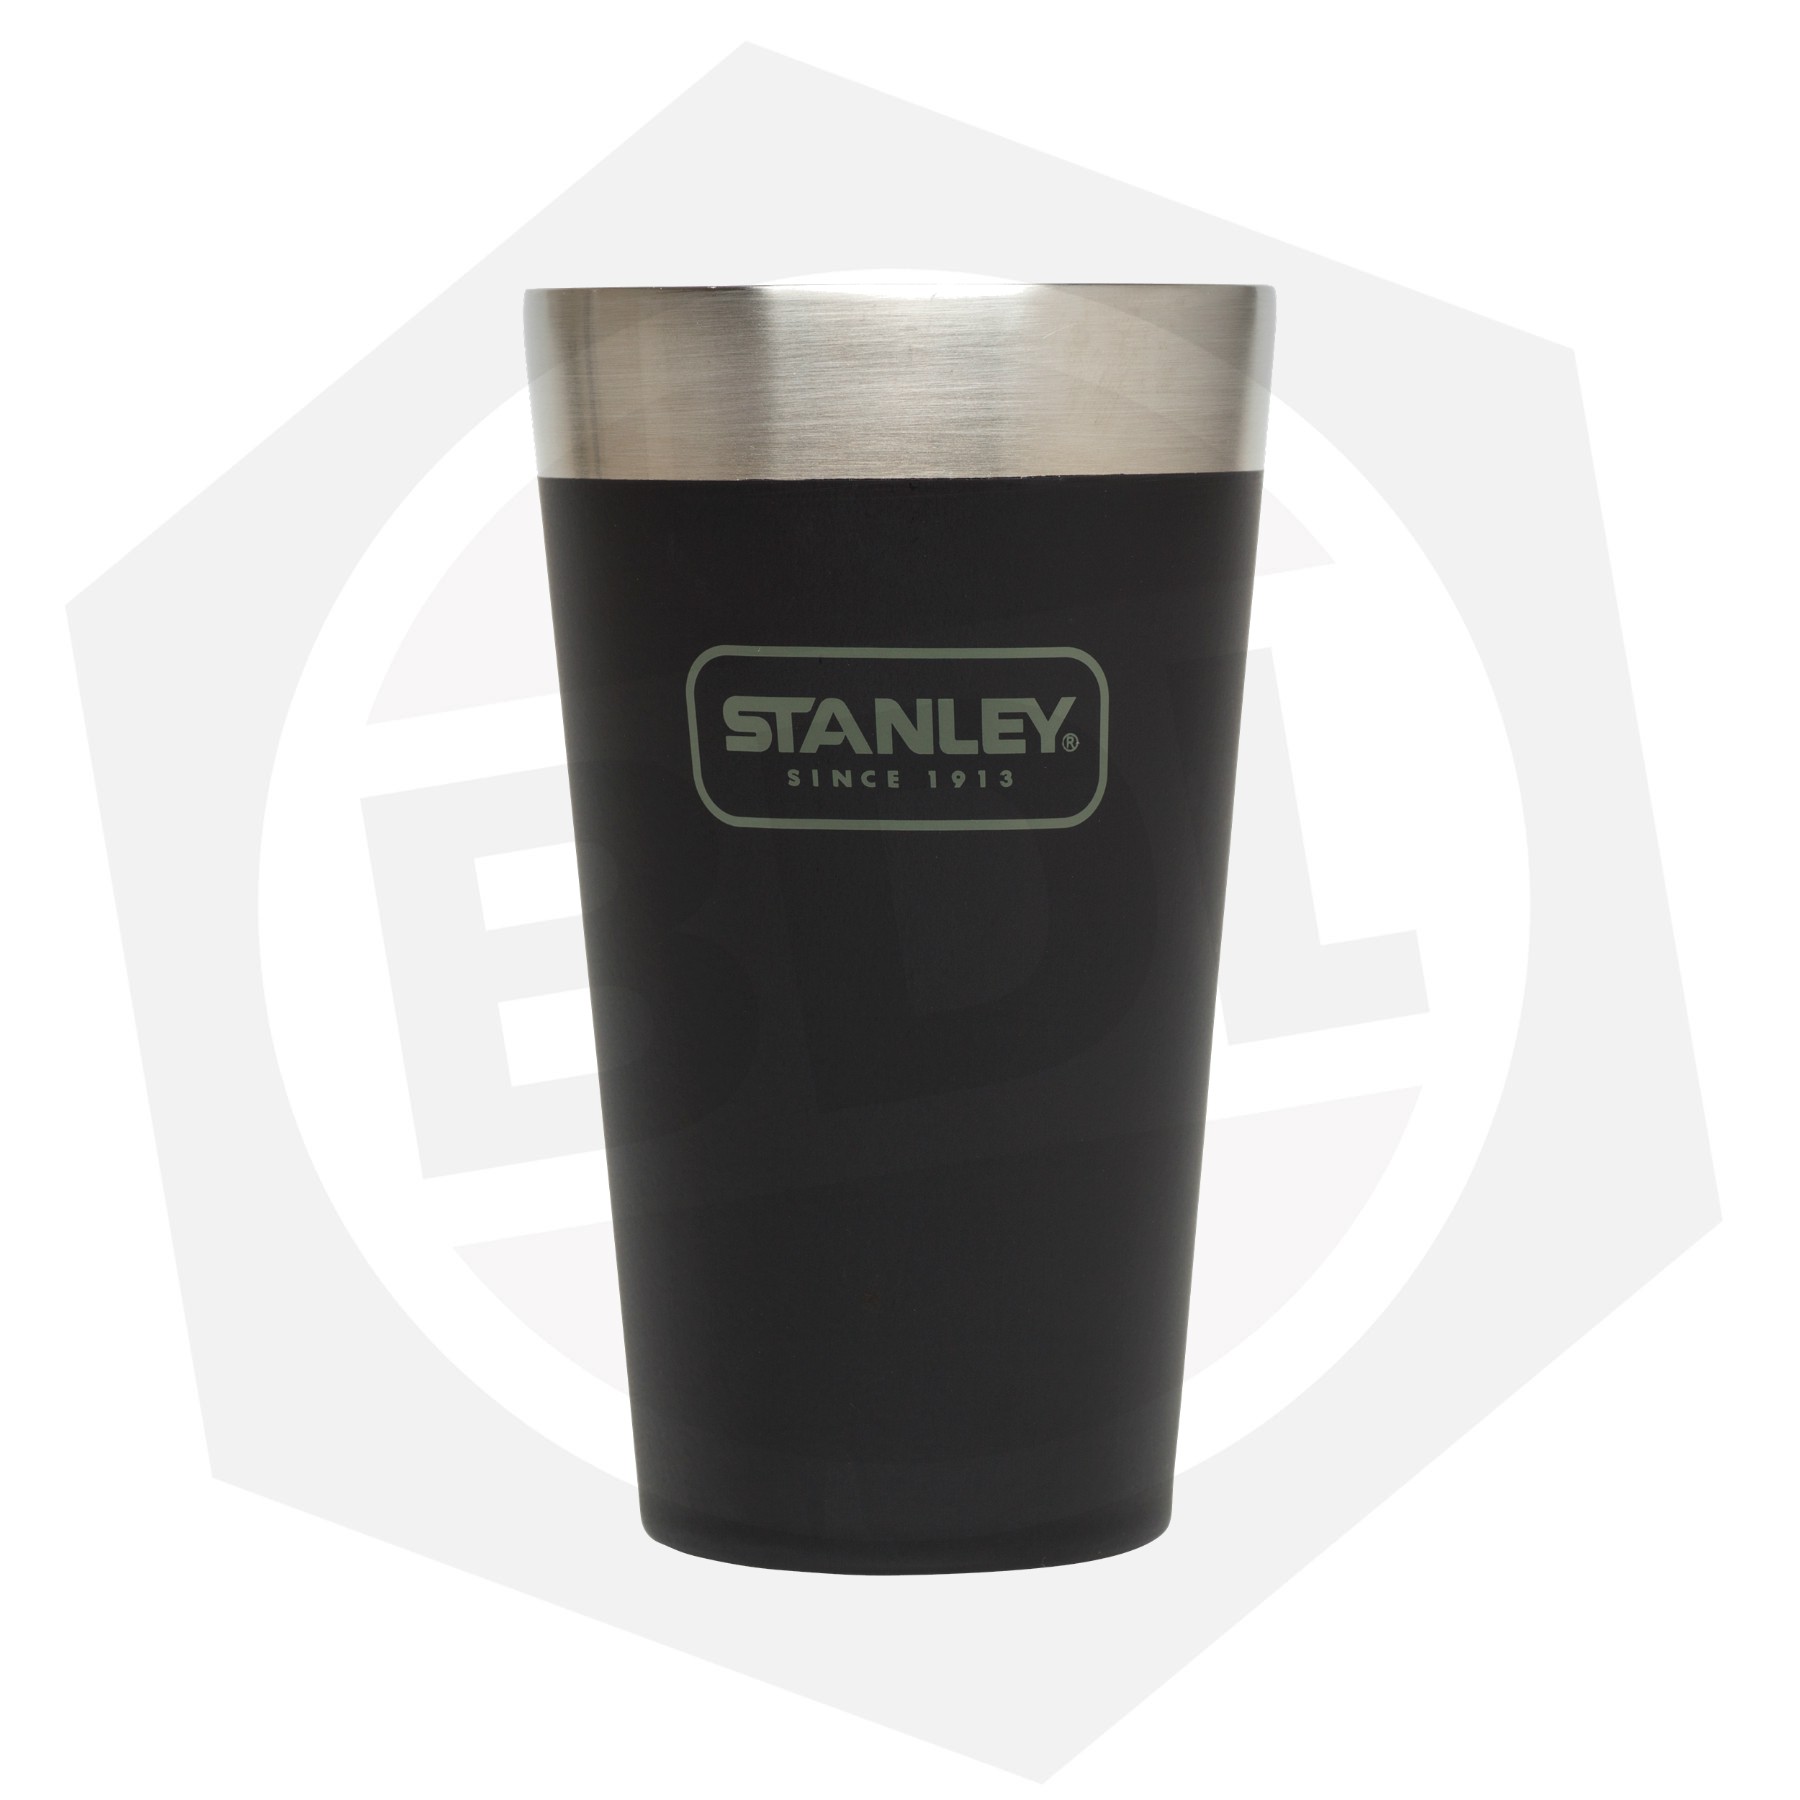 Vaso termico Stanley color negro